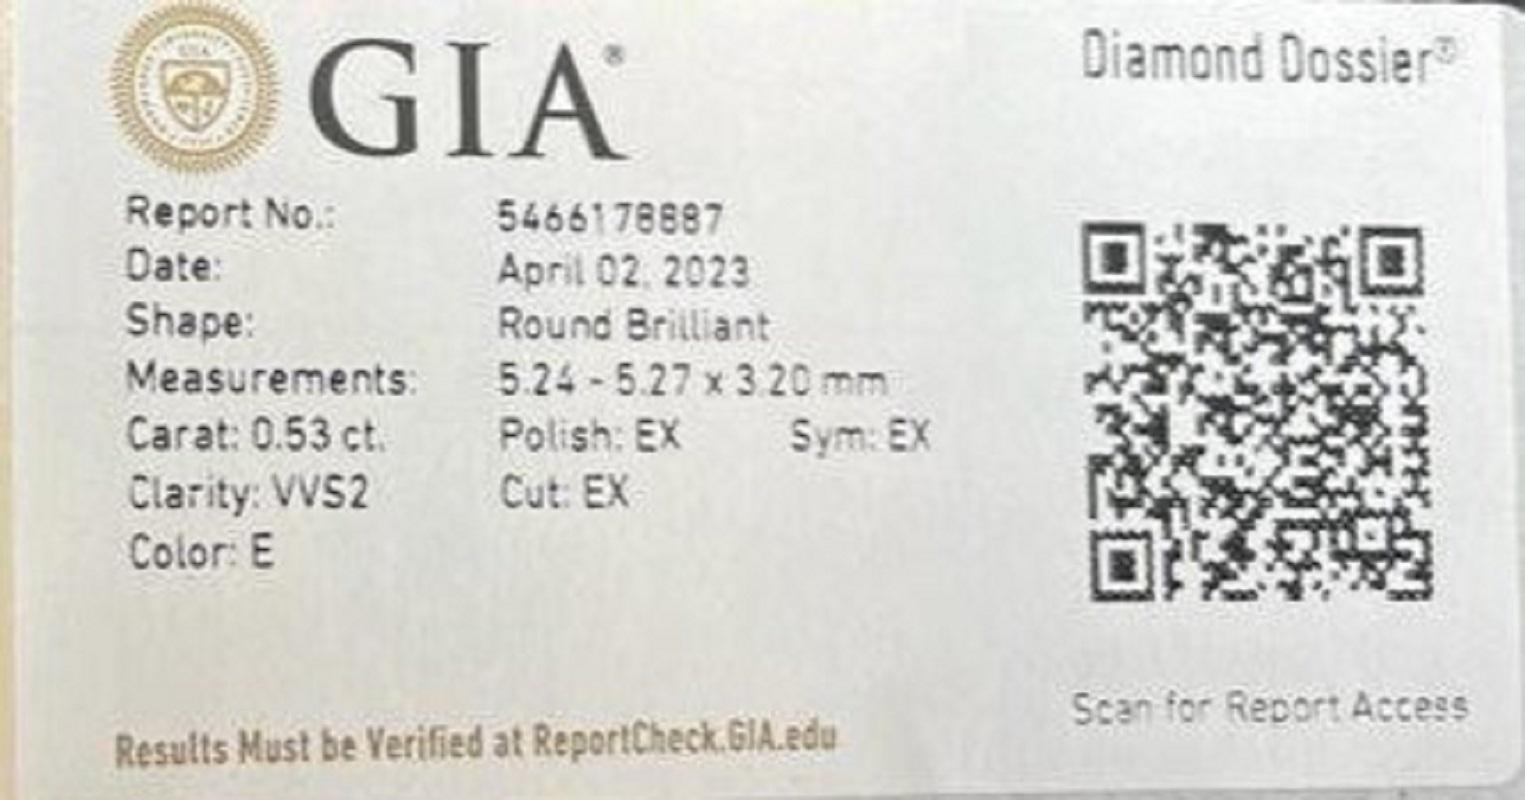 Sparkling 1pc Natural Diamond w/ 0.53ct Round Brilliant E VVS2 GIA Certificate For Sale 2